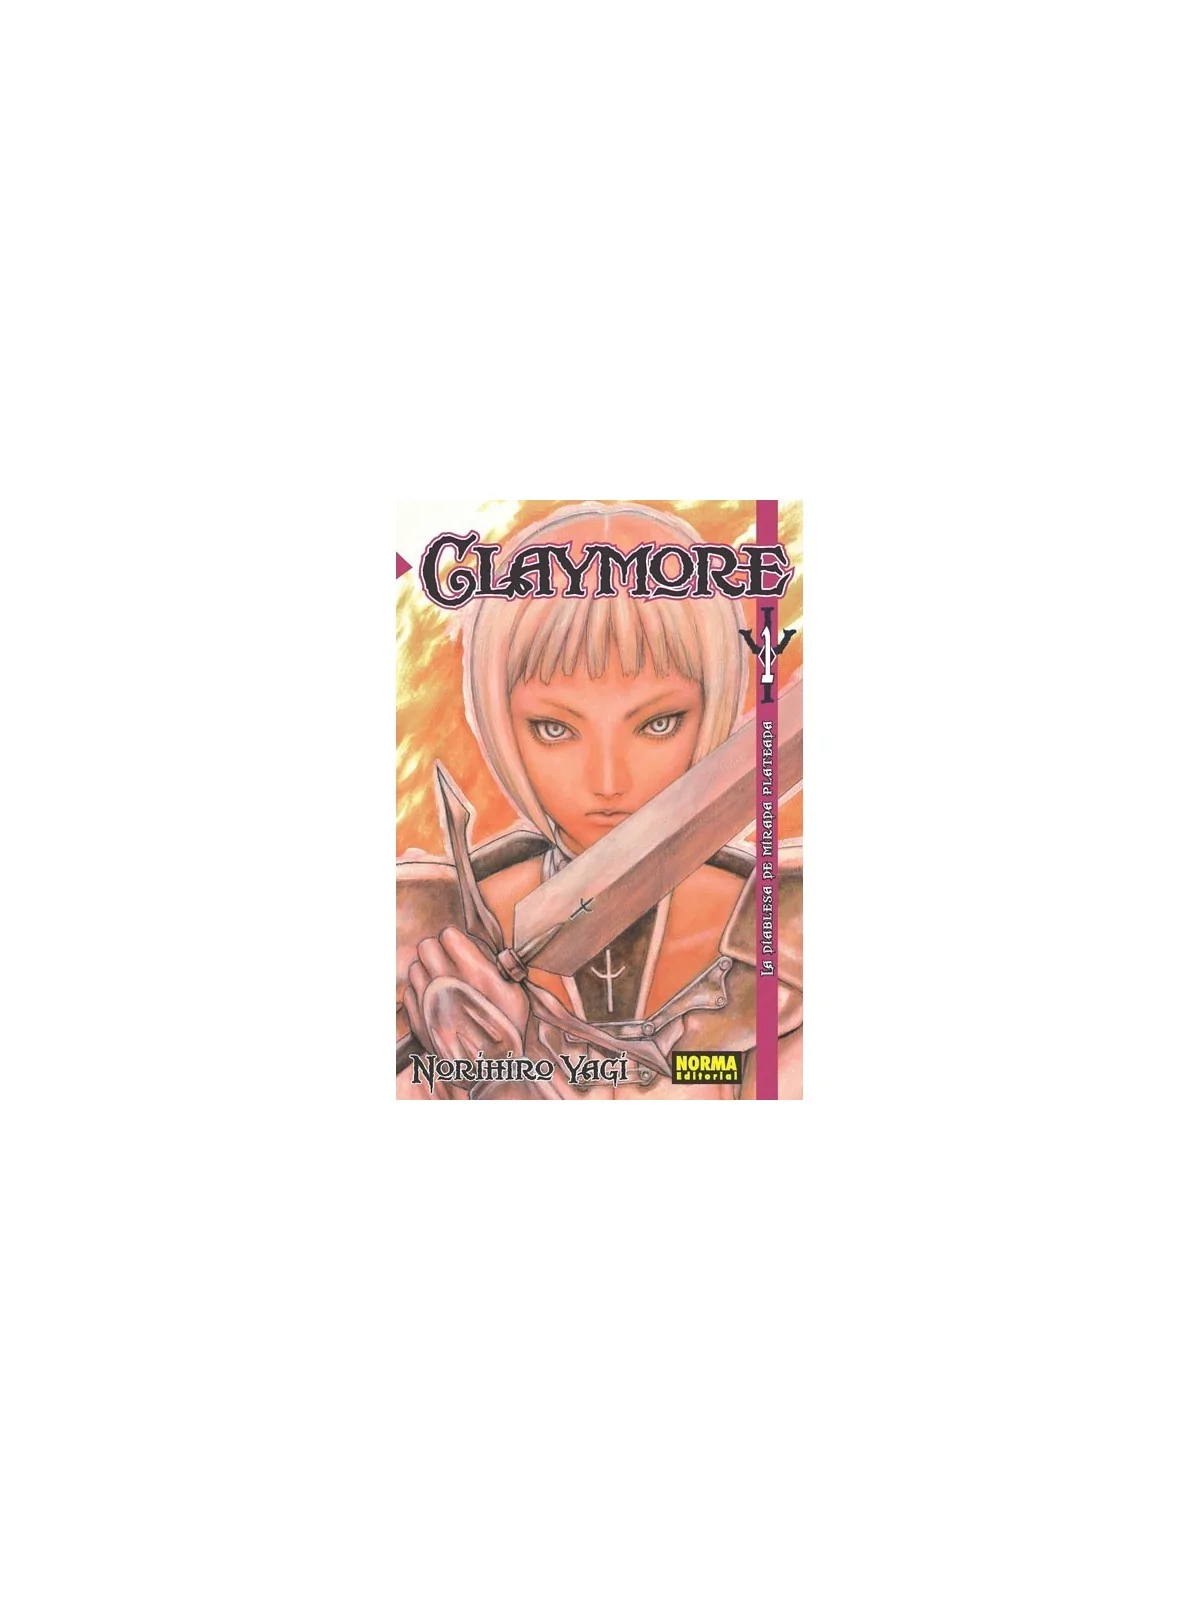 Comprar Claymore 01 barato al mejor precio 7,12 € de Norma Editorial